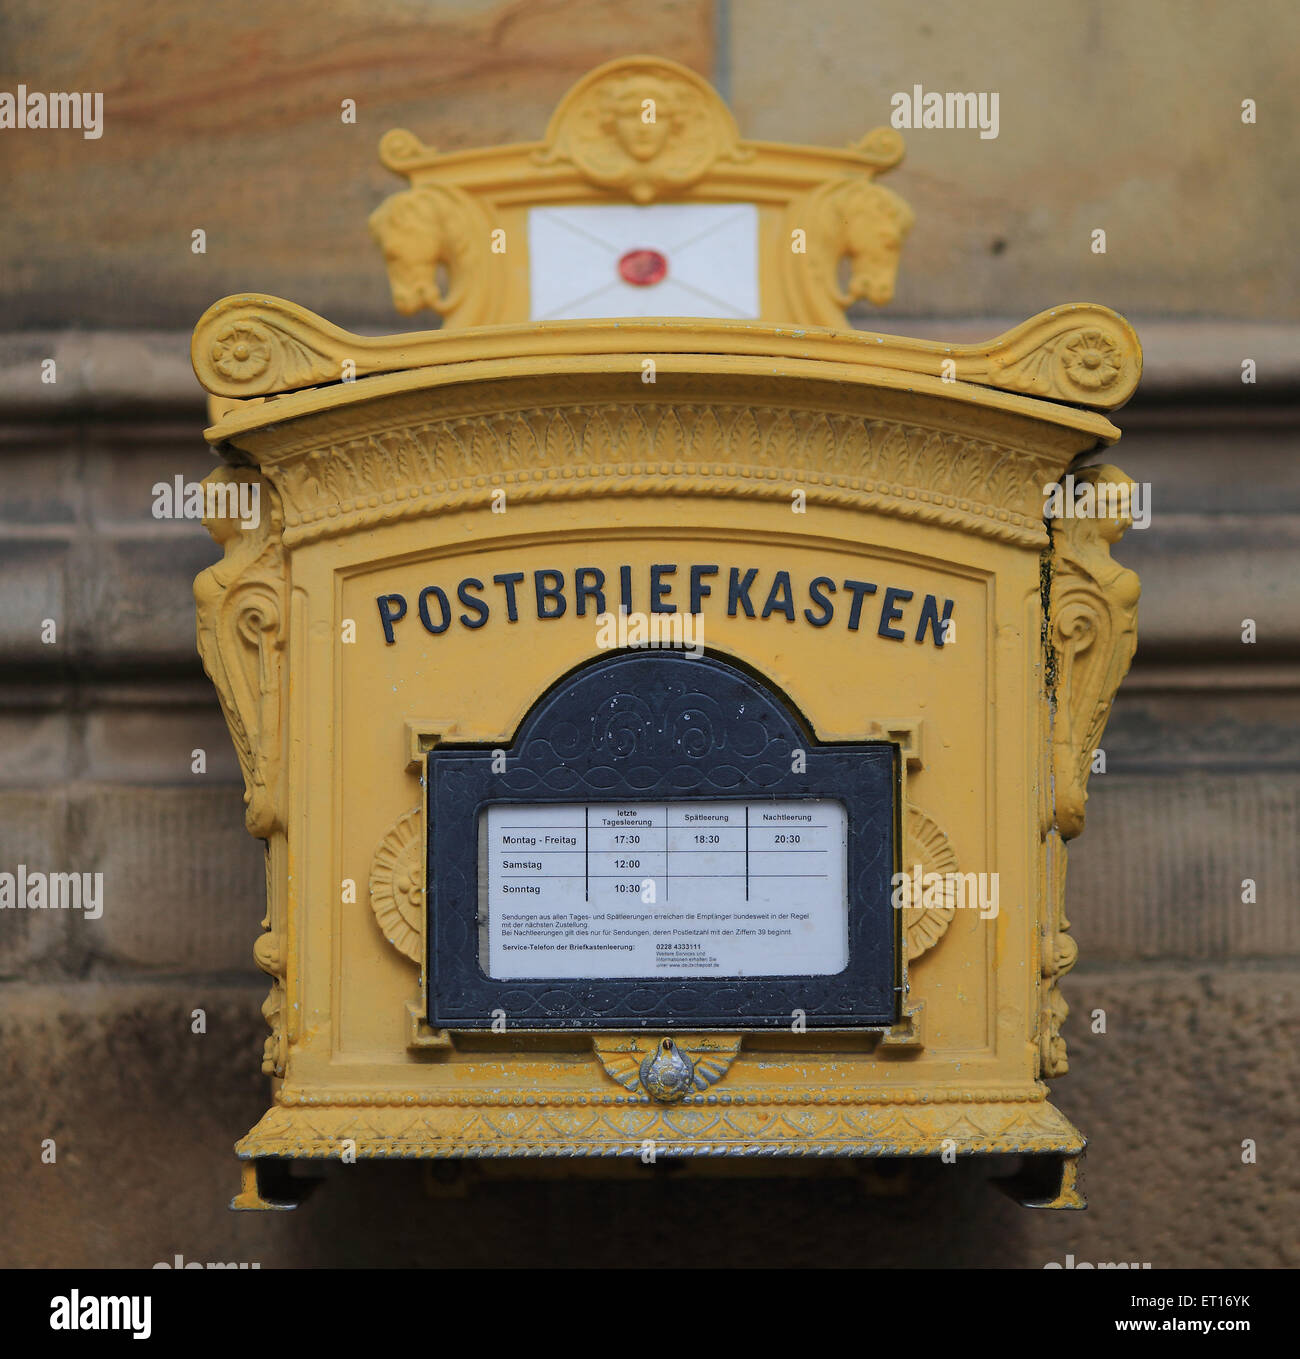 Ein Briefkasten der Deutschen Post AG in Magdeburg, Deutschland, 10. Juni  2015. Deutsche Gewerkschaft Verdi hat die Deutsche Post Mitarbeiter zu  einem unbefristeten Streik aufgerufen. Foto: JENS WOLF/dpa Stockfotografie  - Alamy